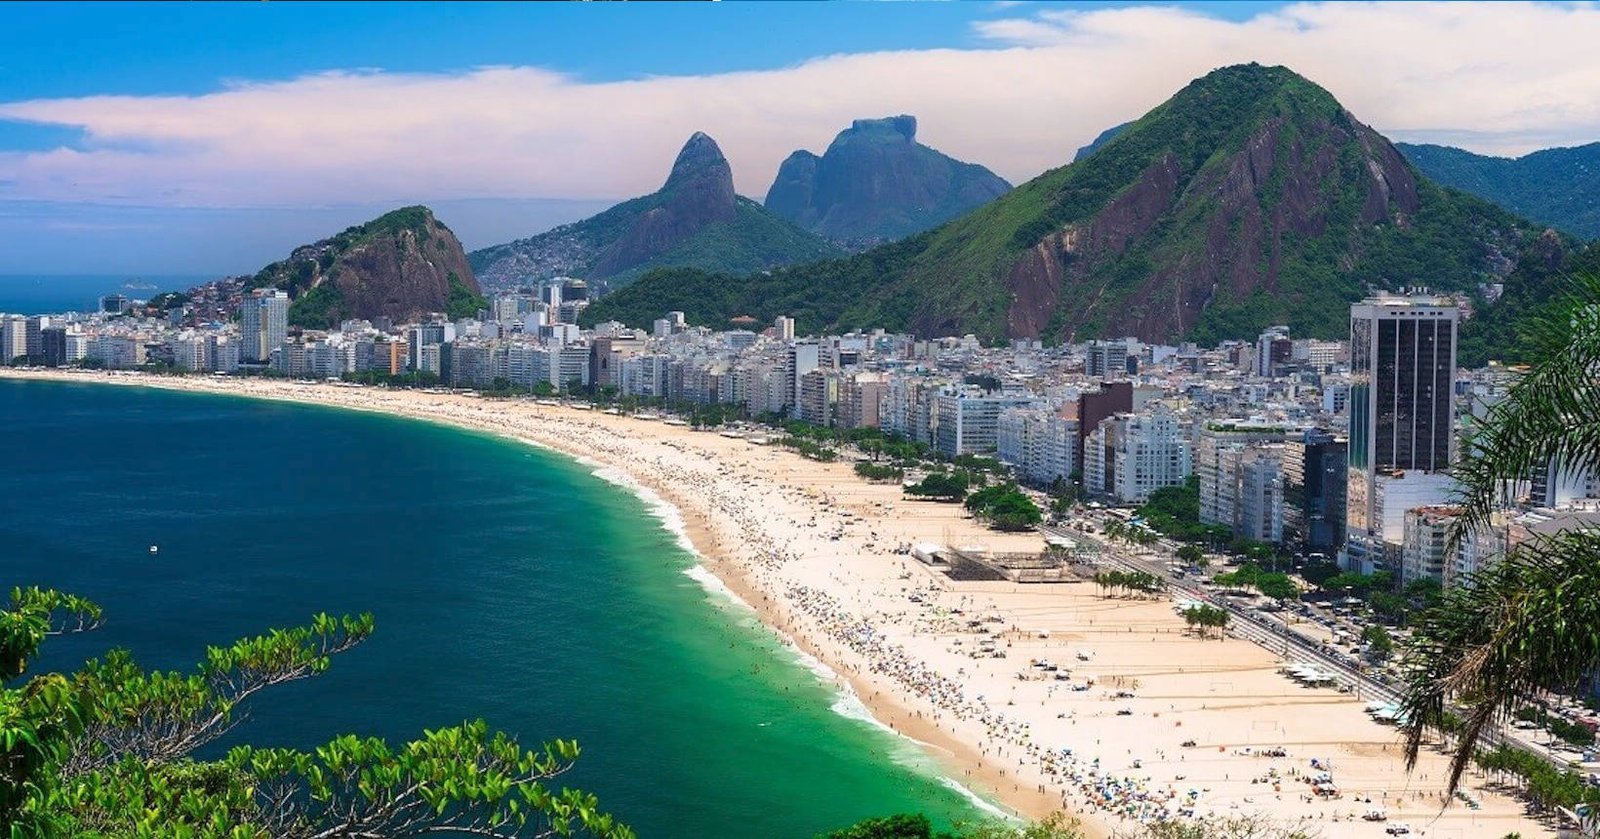 Lançamento Be in Rio Toneleiro 61 – Copacabana: Inovação Imobiliária na Região